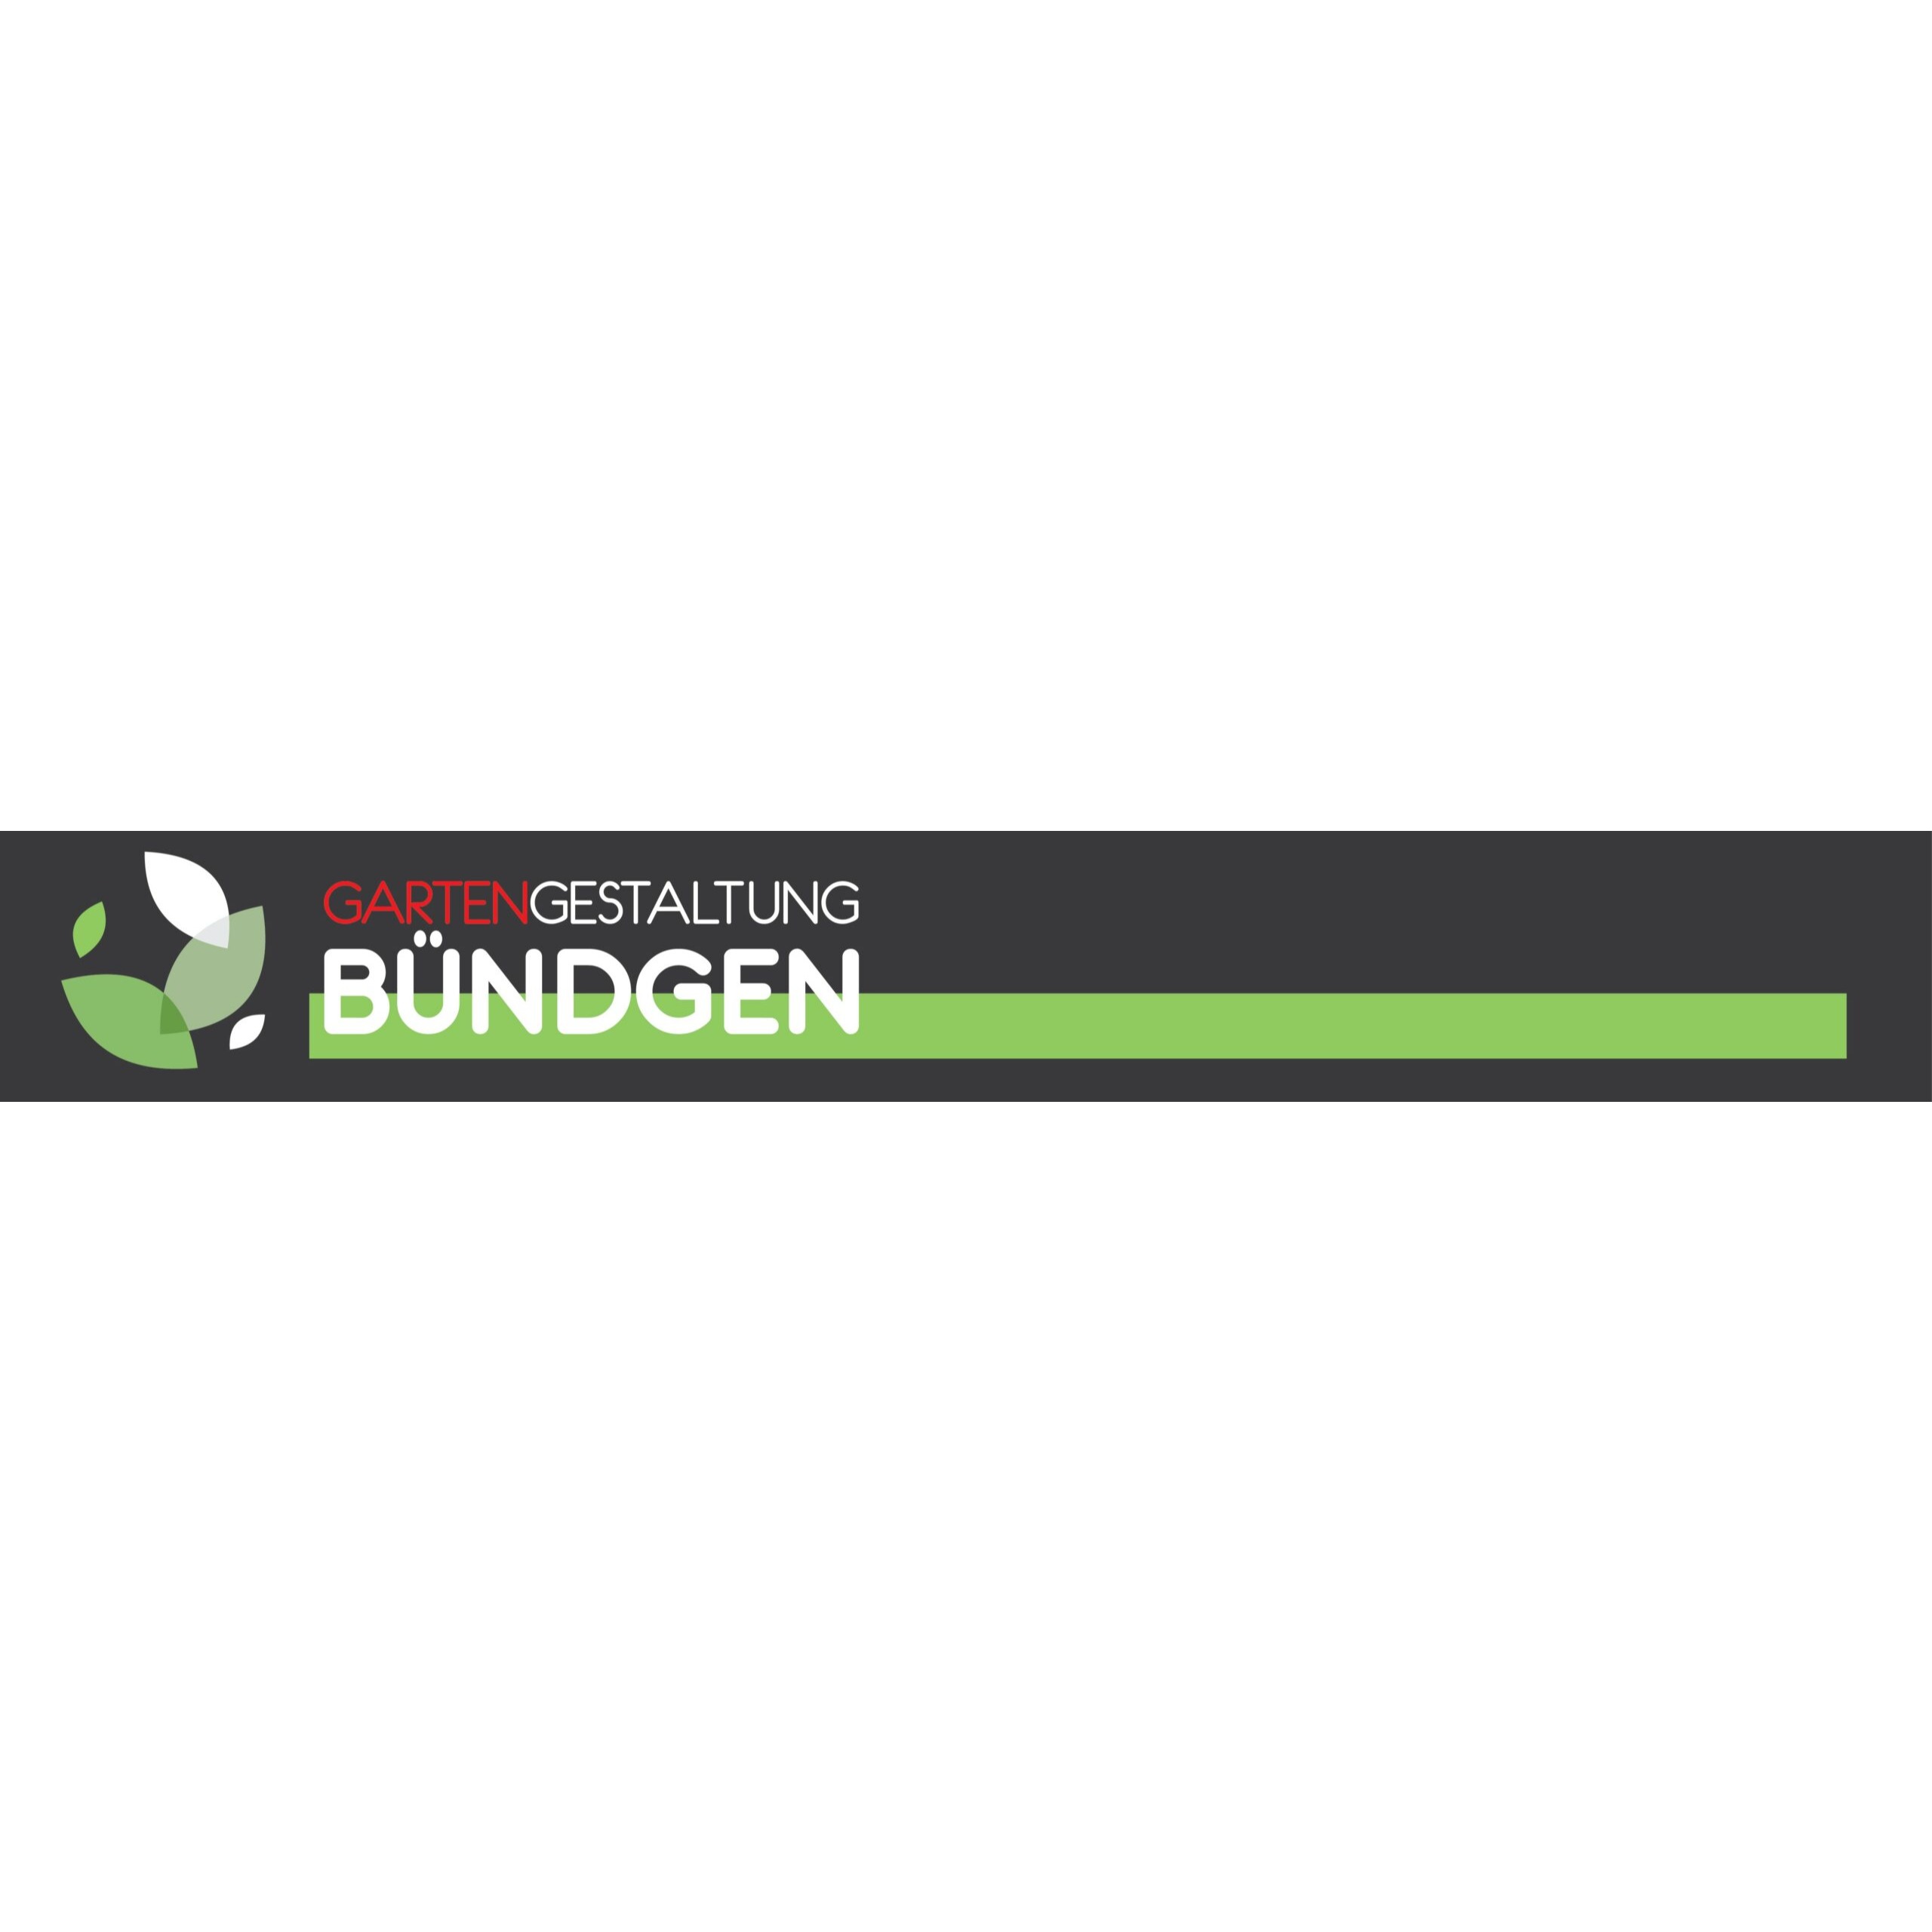 Gartengestaltung Bündgen in Erkelenz in Erkelenz - Logo